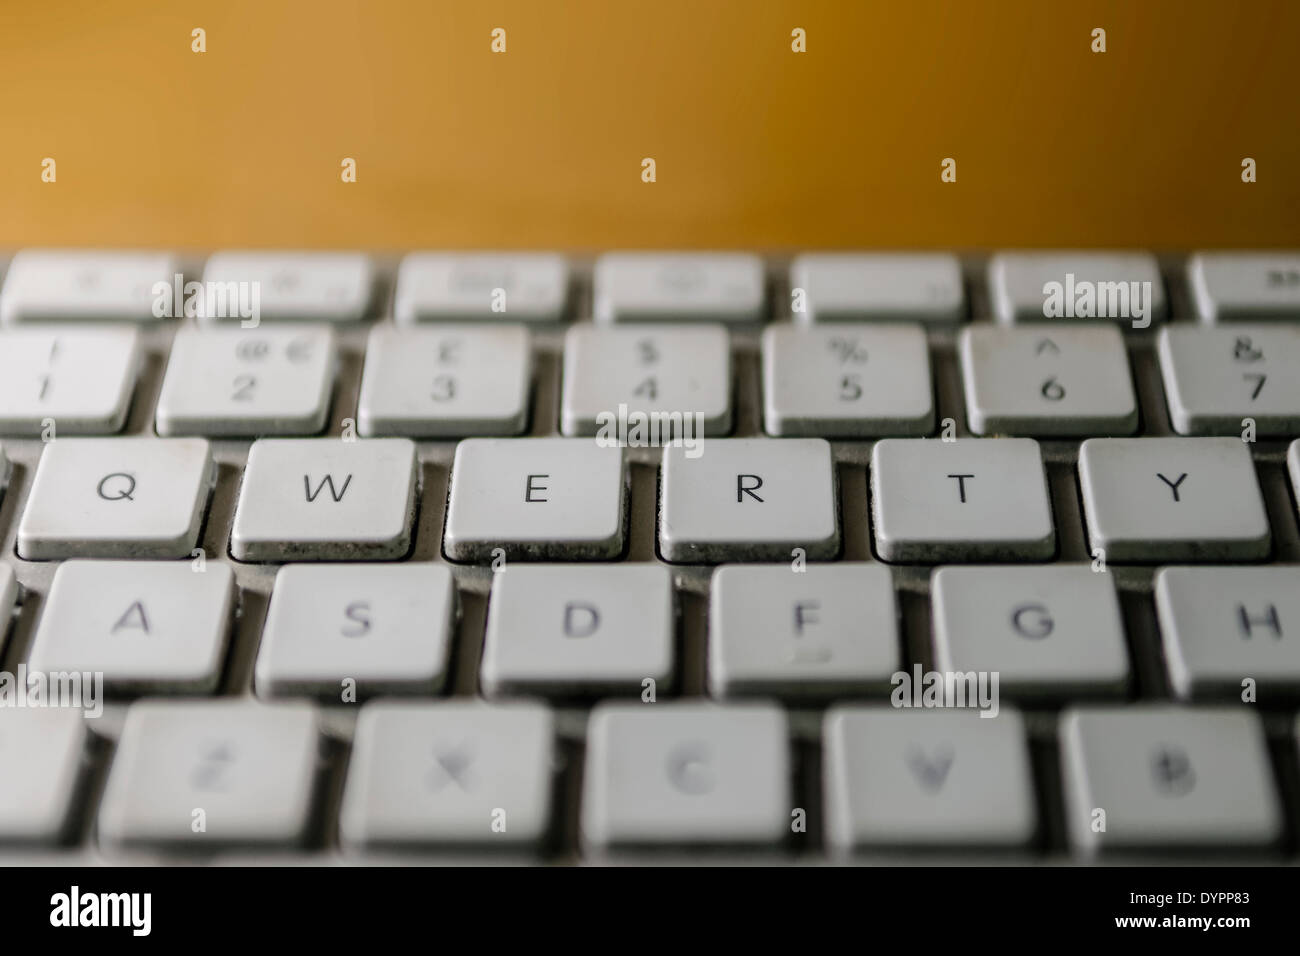 Grimy tastiera del computer, concentrandosi sui tasti QWERTY. Foto Stock